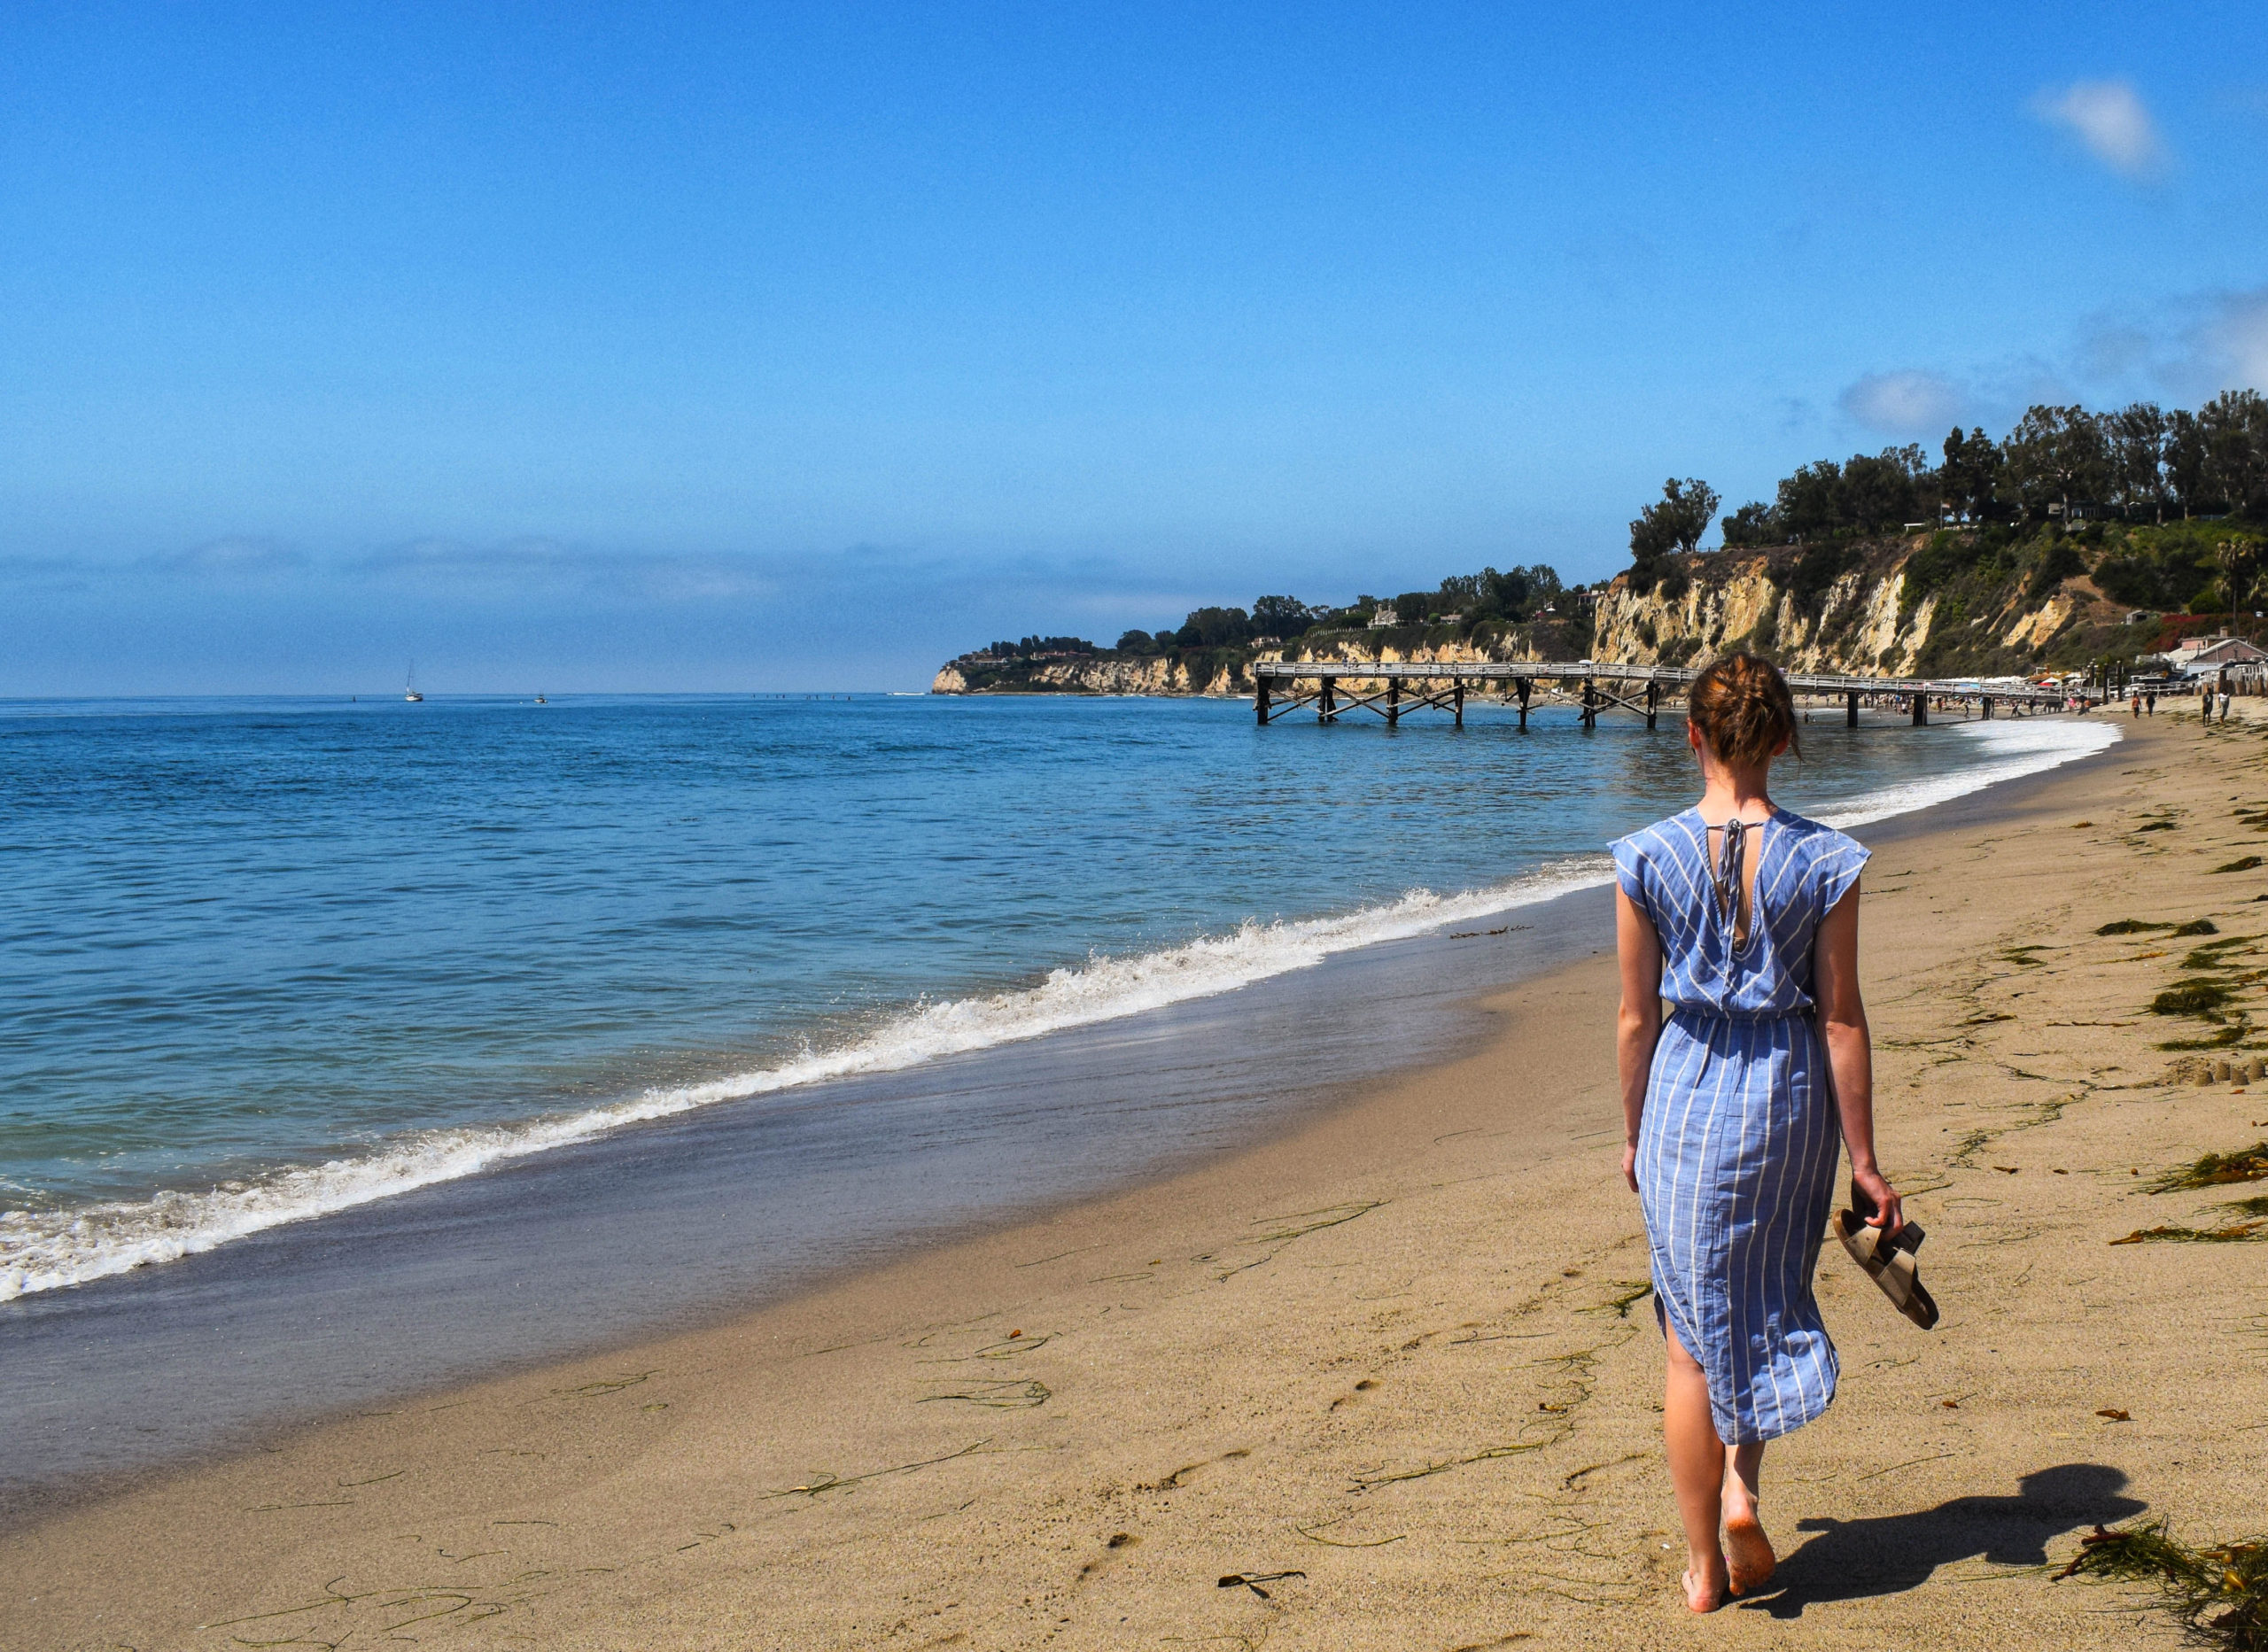 Woman walking on the beach in a blue dress in Malibu by the ocean